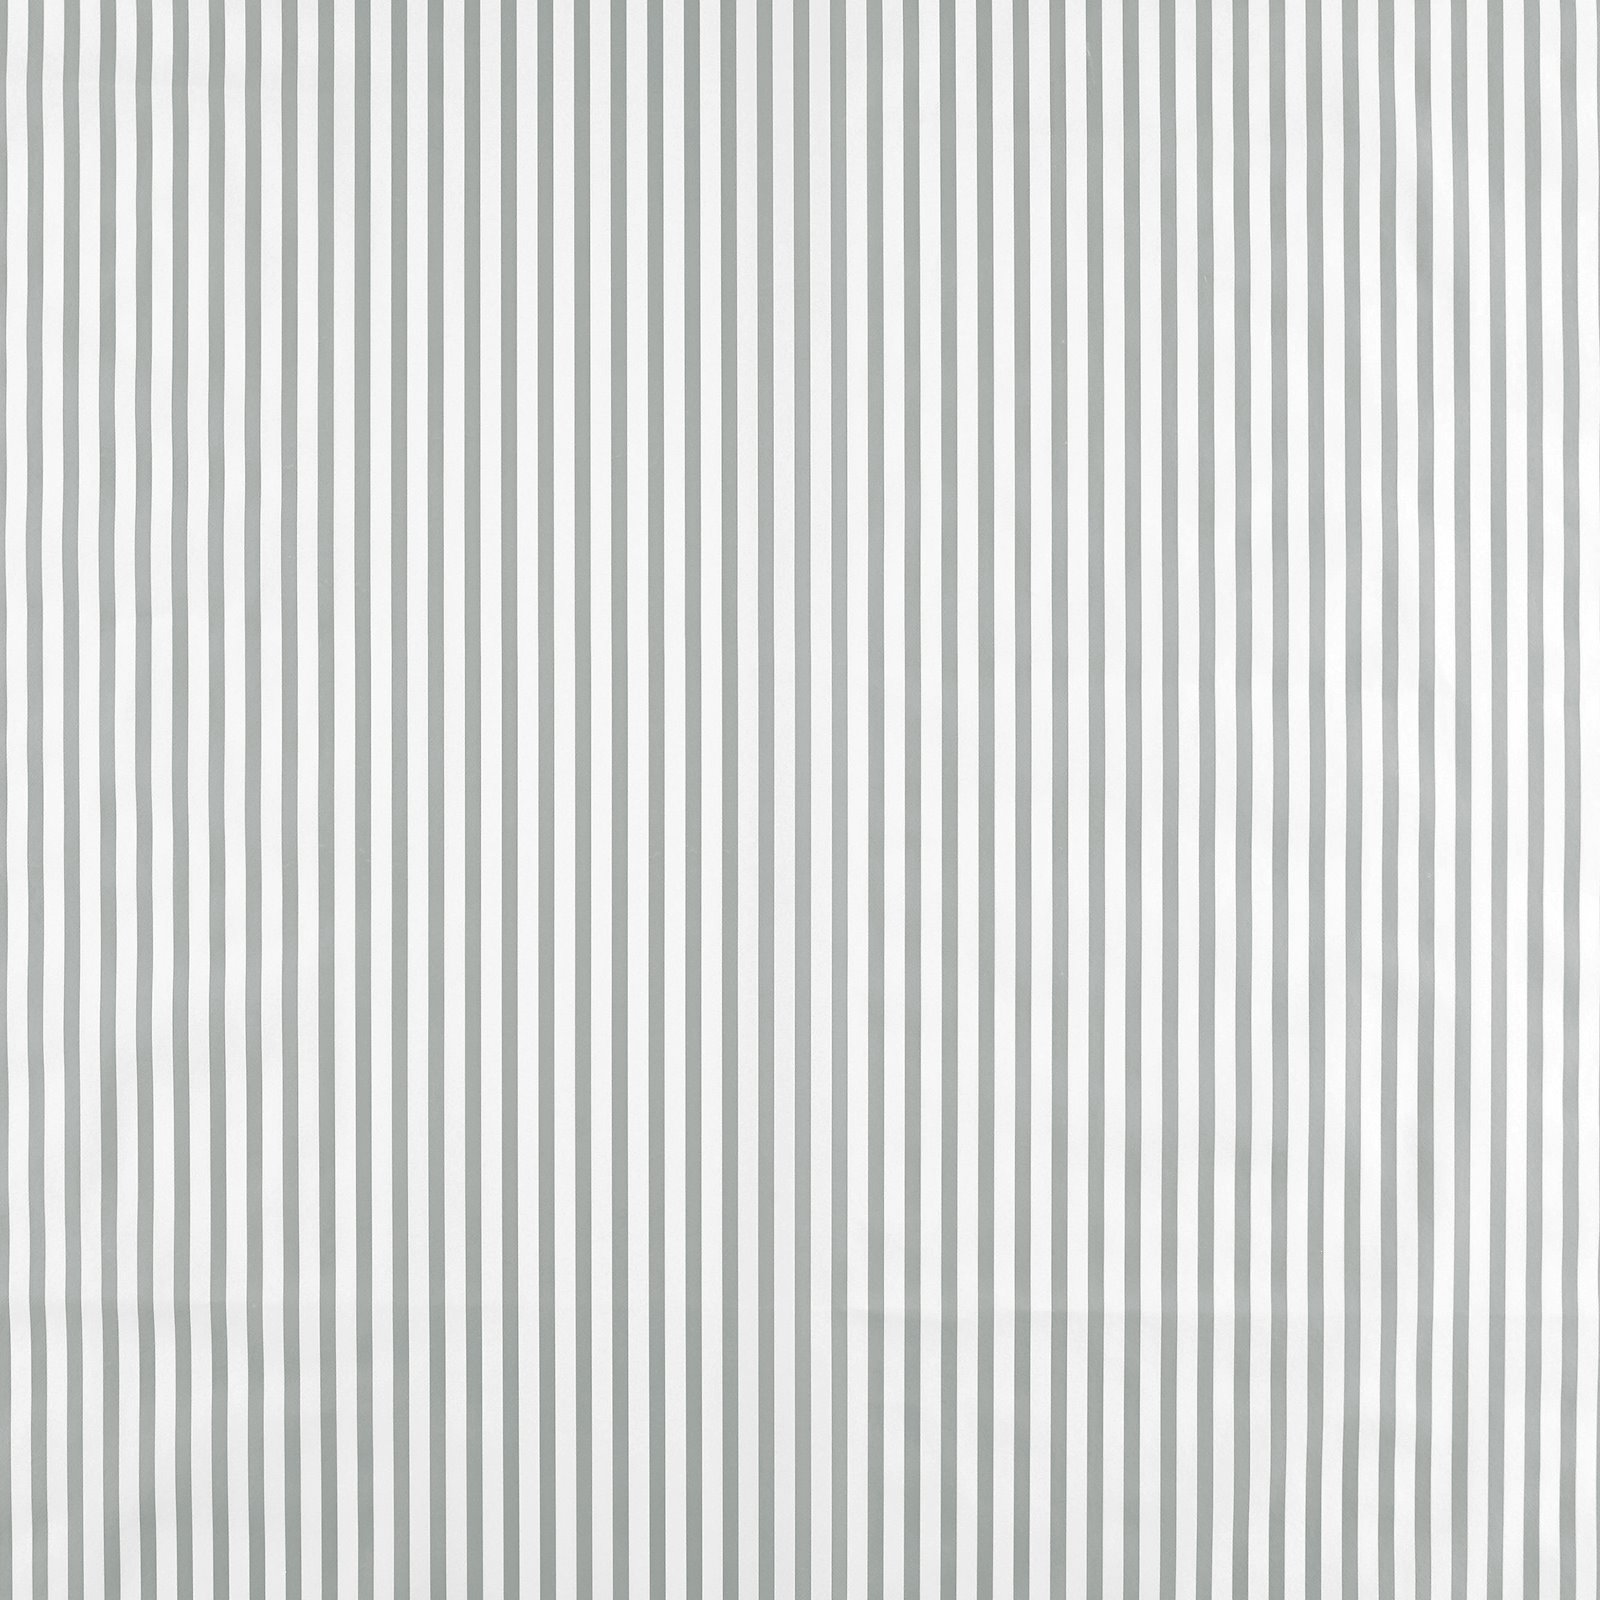 Voksduk grå/hvit striper 861497_pack_sp